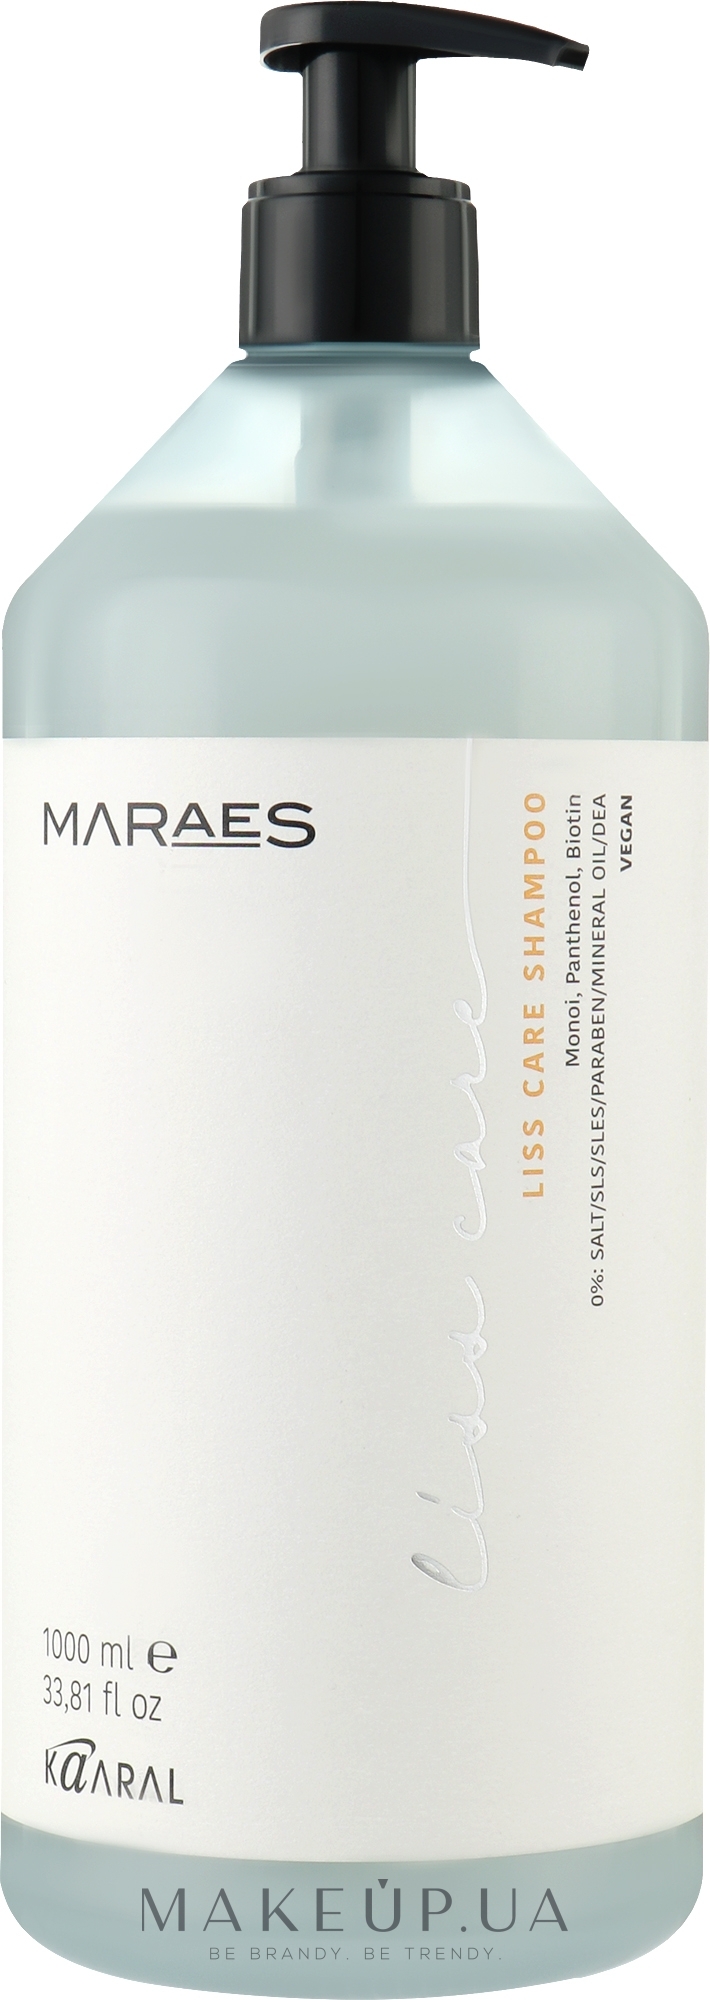 Шампунь для прямых волос с пантенолом и биотином - Kaaral Maraes Liss Care Shampoo — фото 1000ml